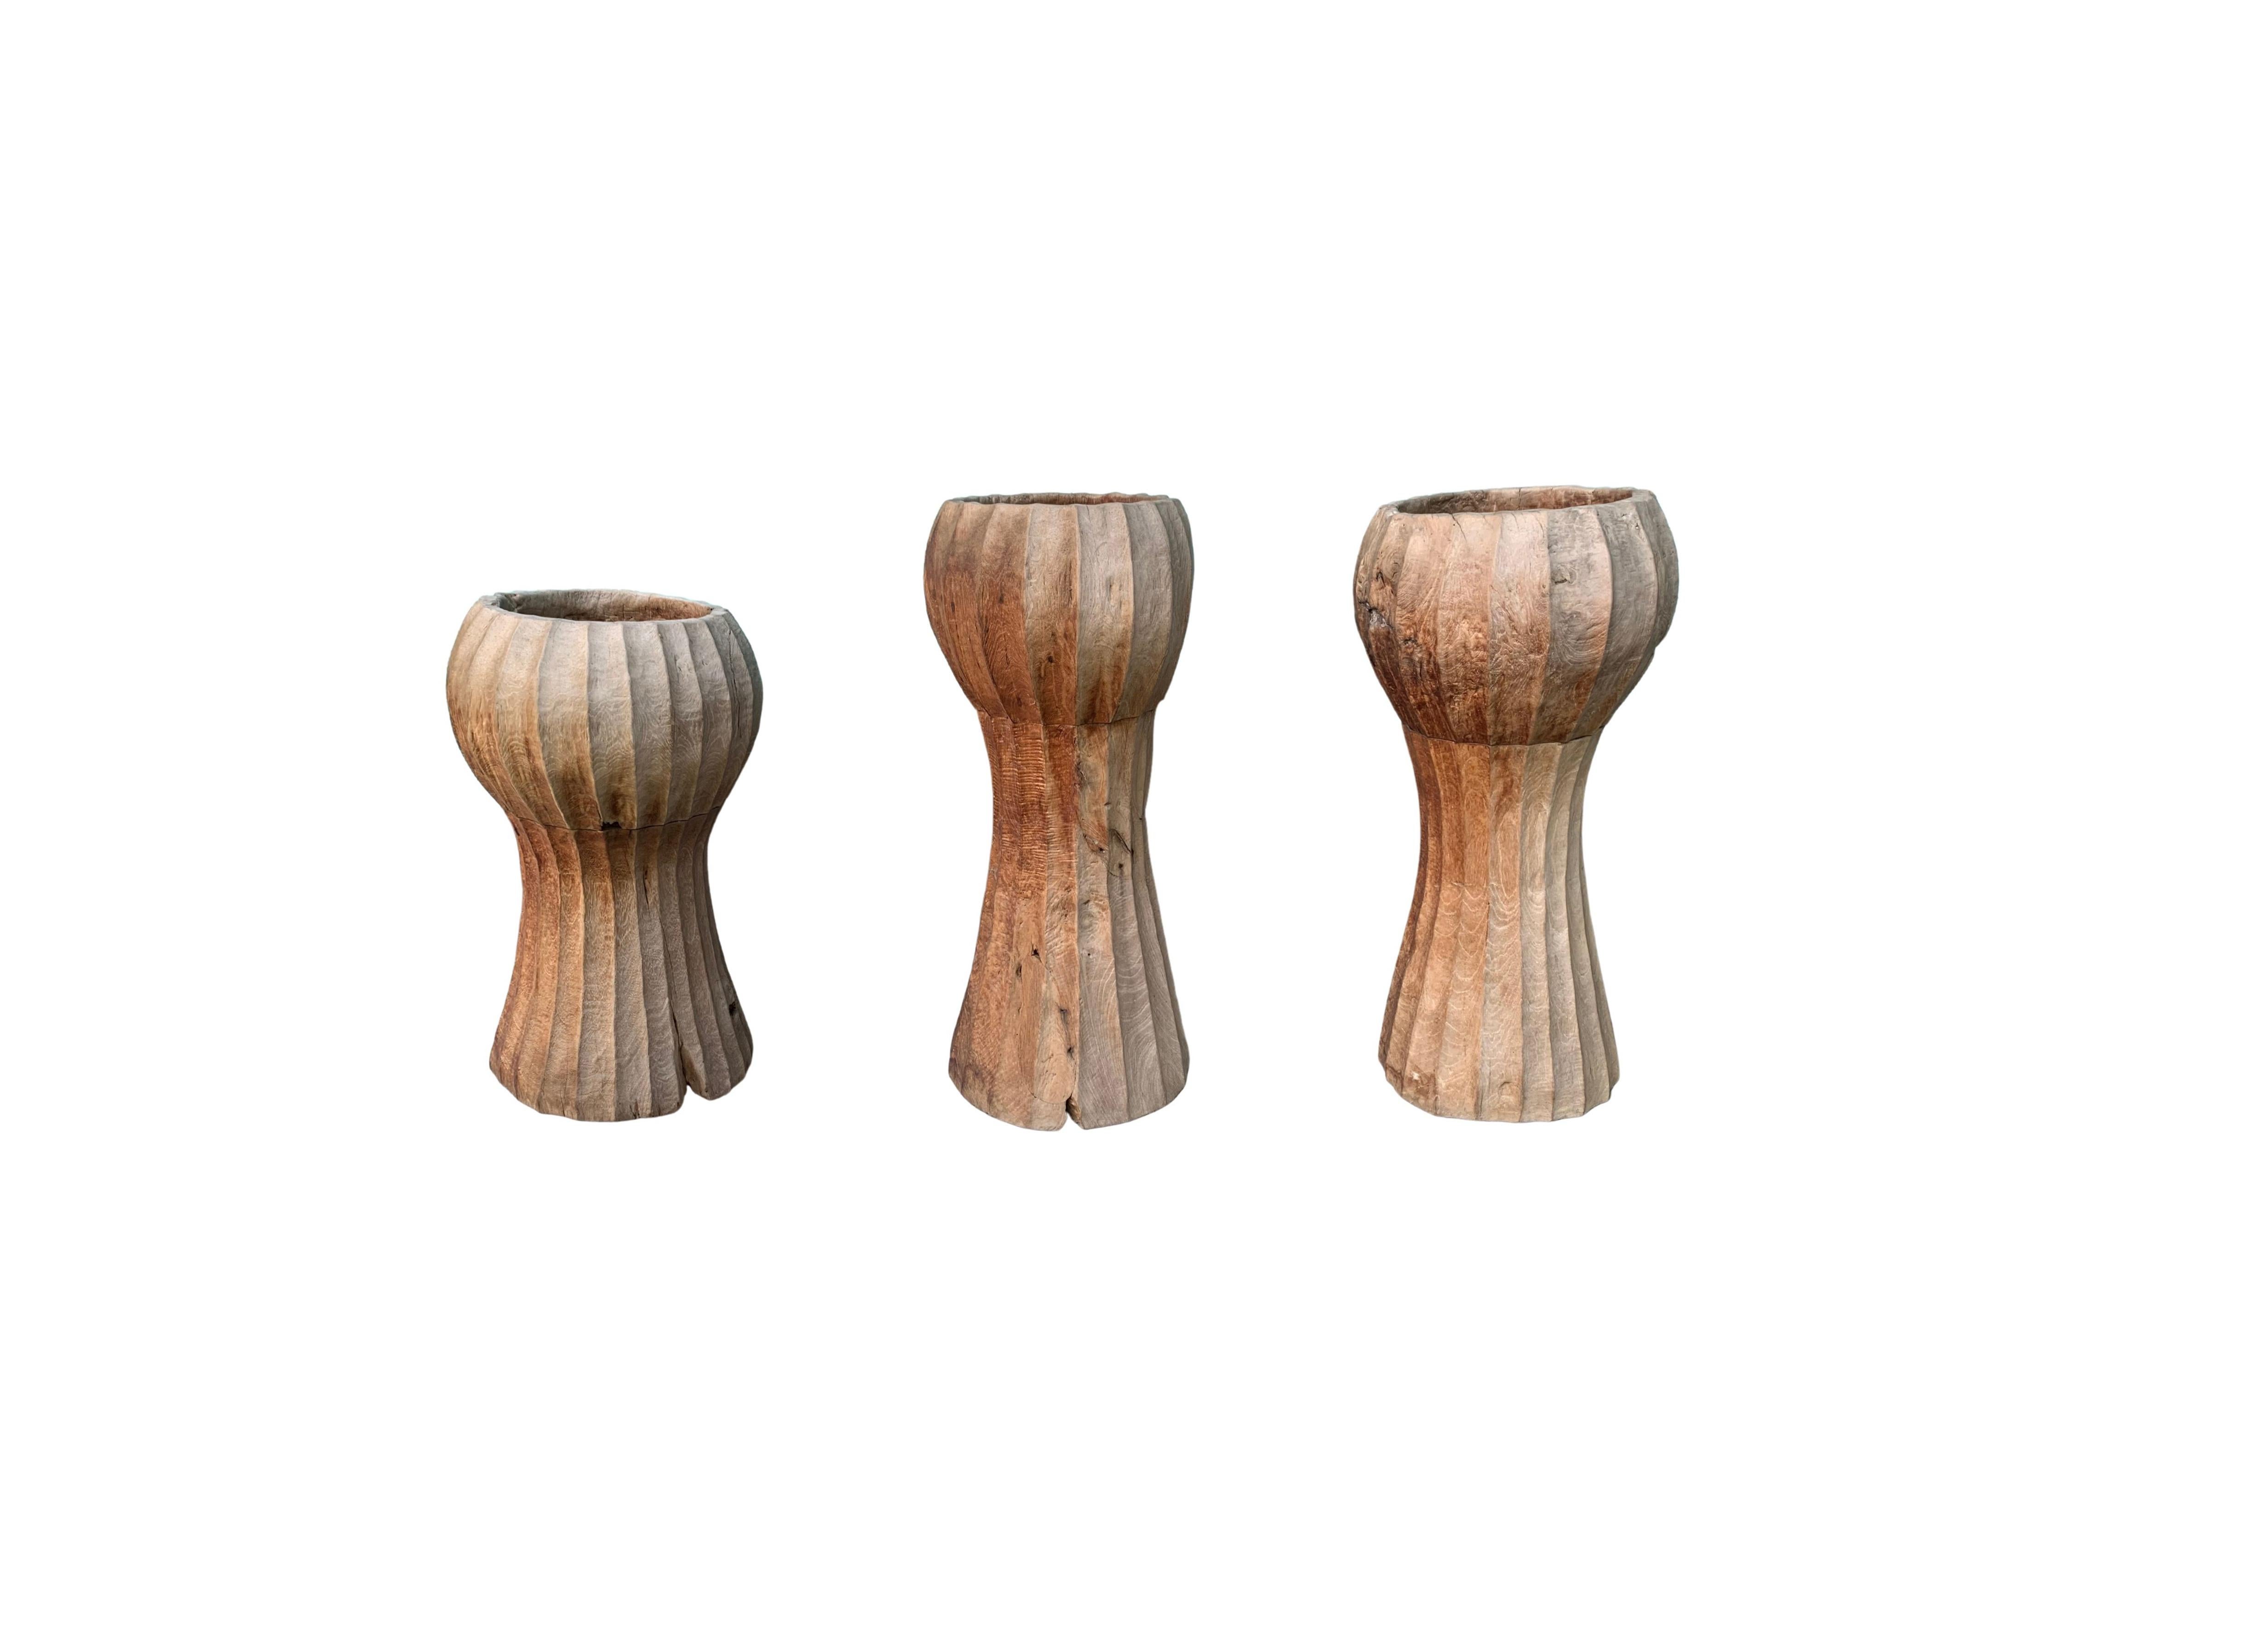 Ces bols de présentation sculpturaux ont été fabriqués à la main sur l'île de Java à partir de bois de teck massif. Avec leur forme allongée et surélevée, ils sont parfaits comme collection de bols décoratifs ou même comme jardinières. Un complément